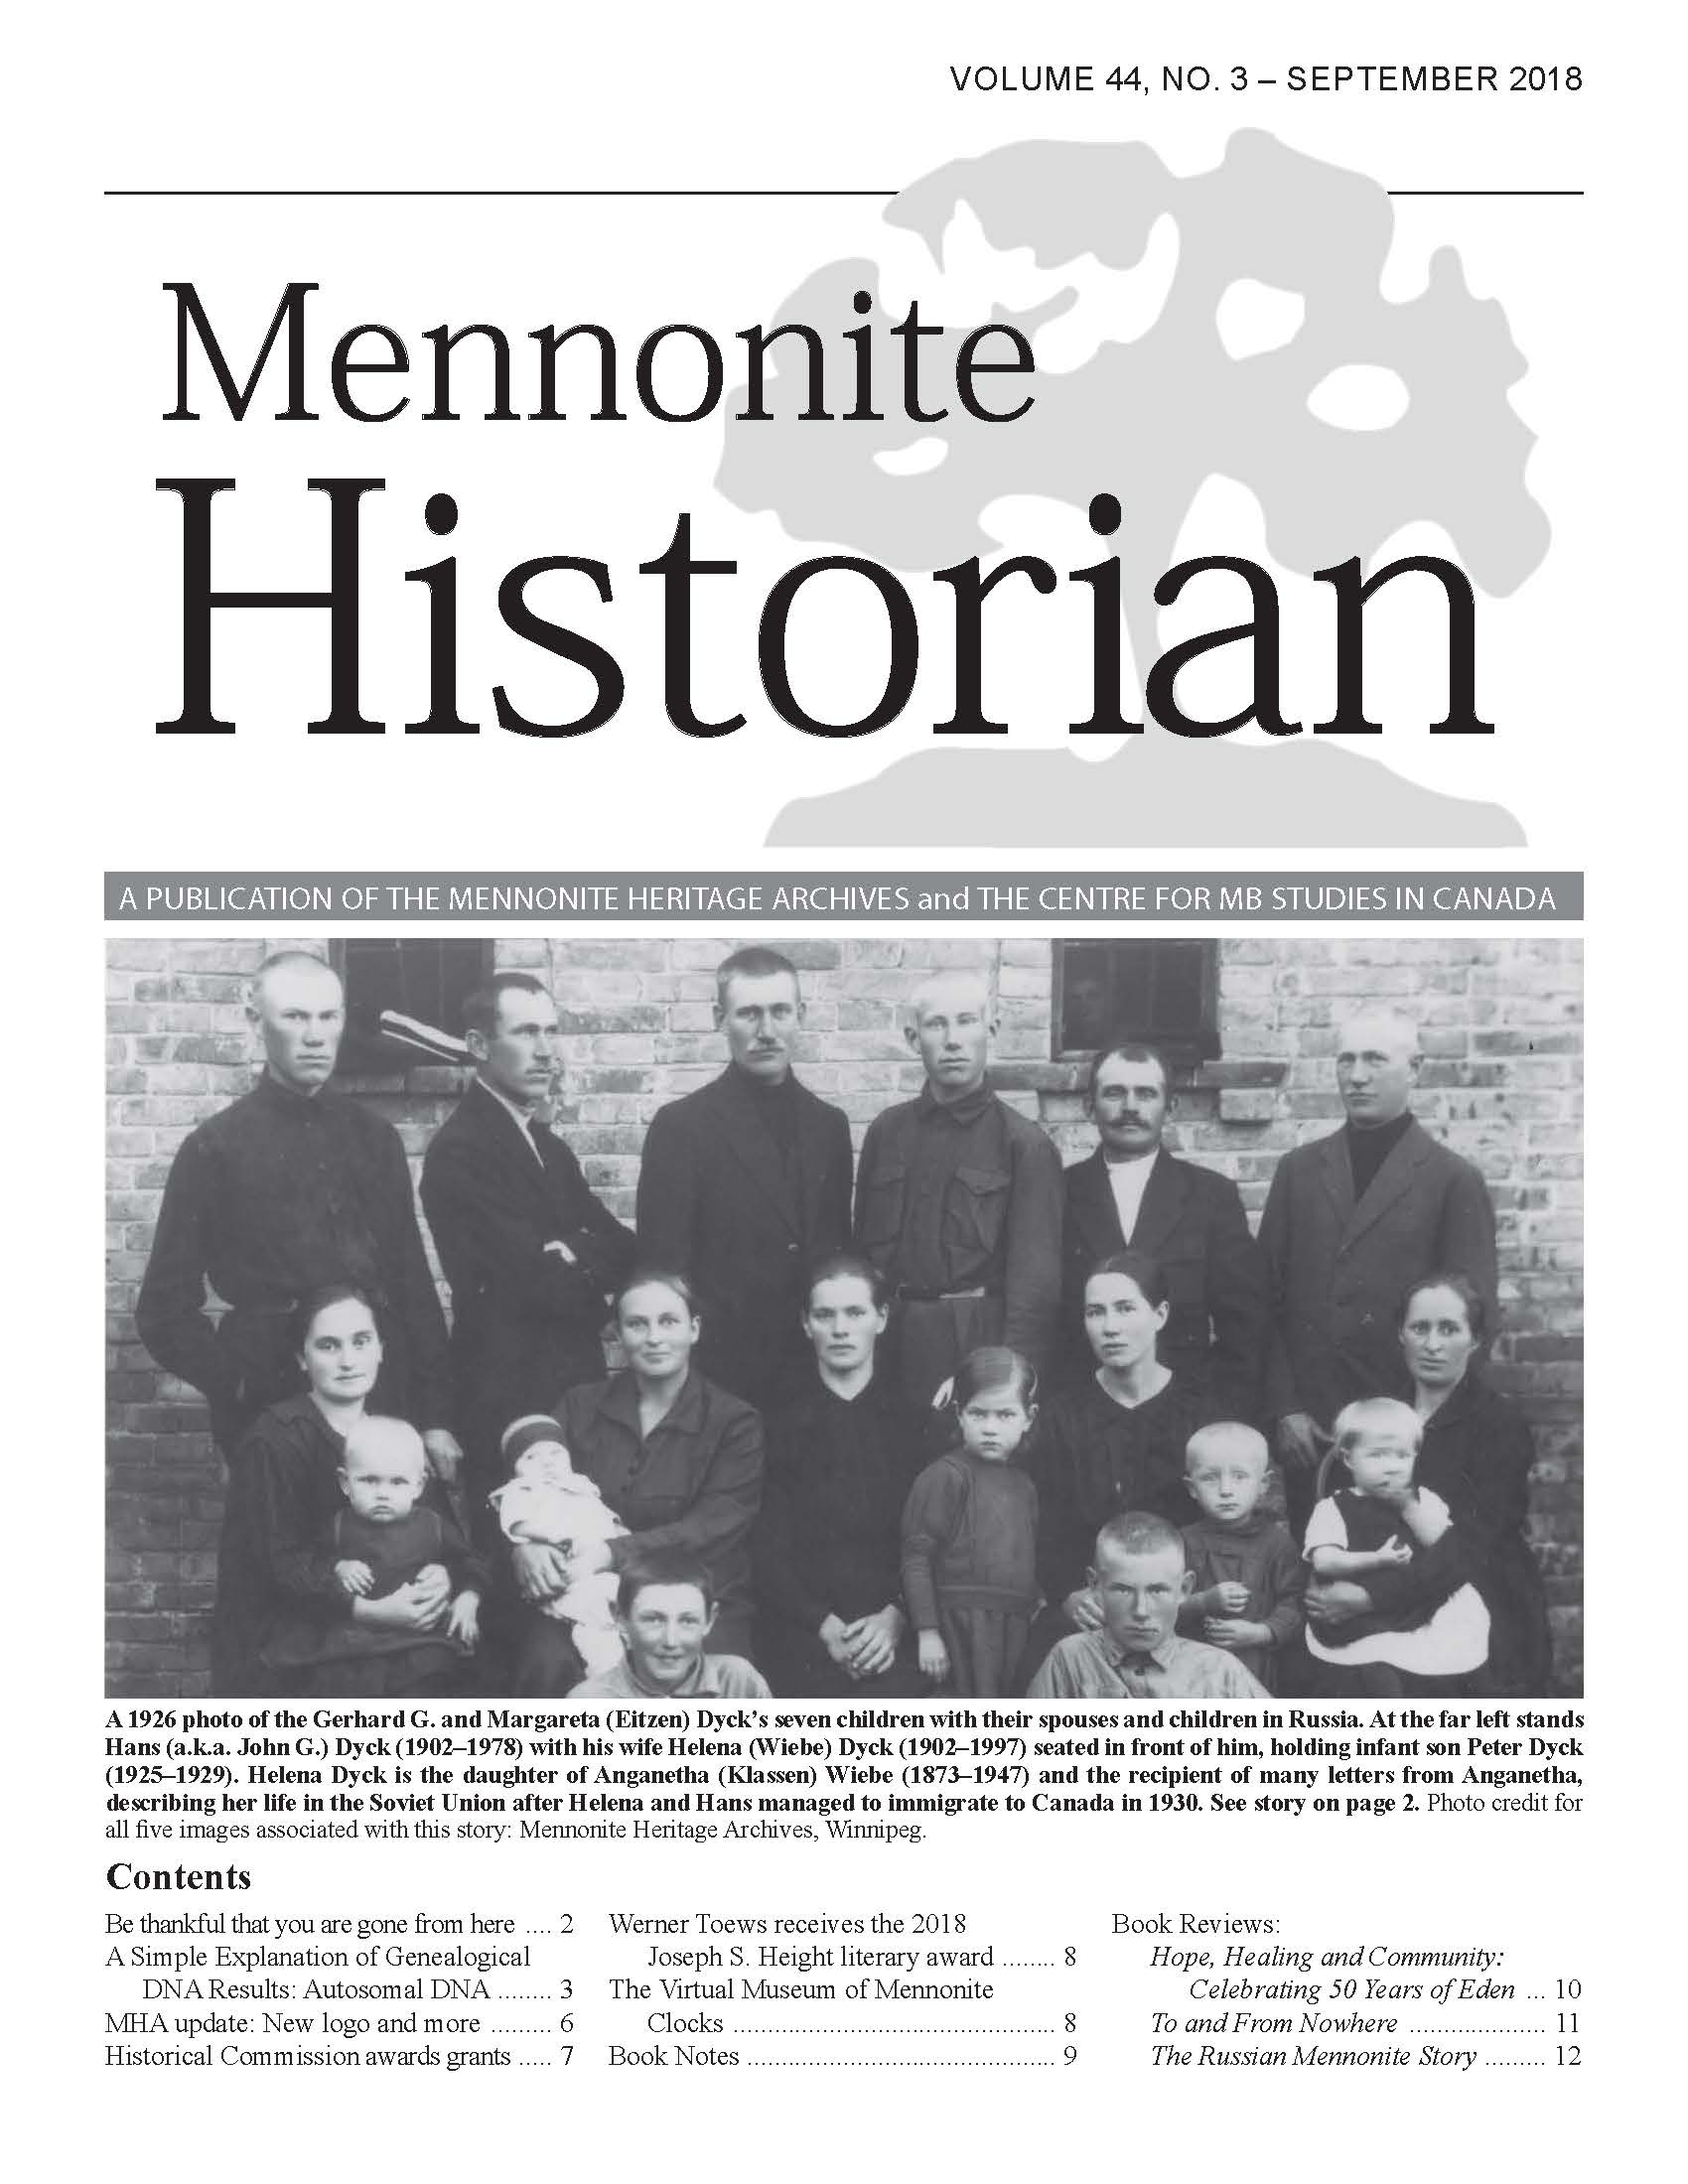 Mennonite Historian (September 2018)